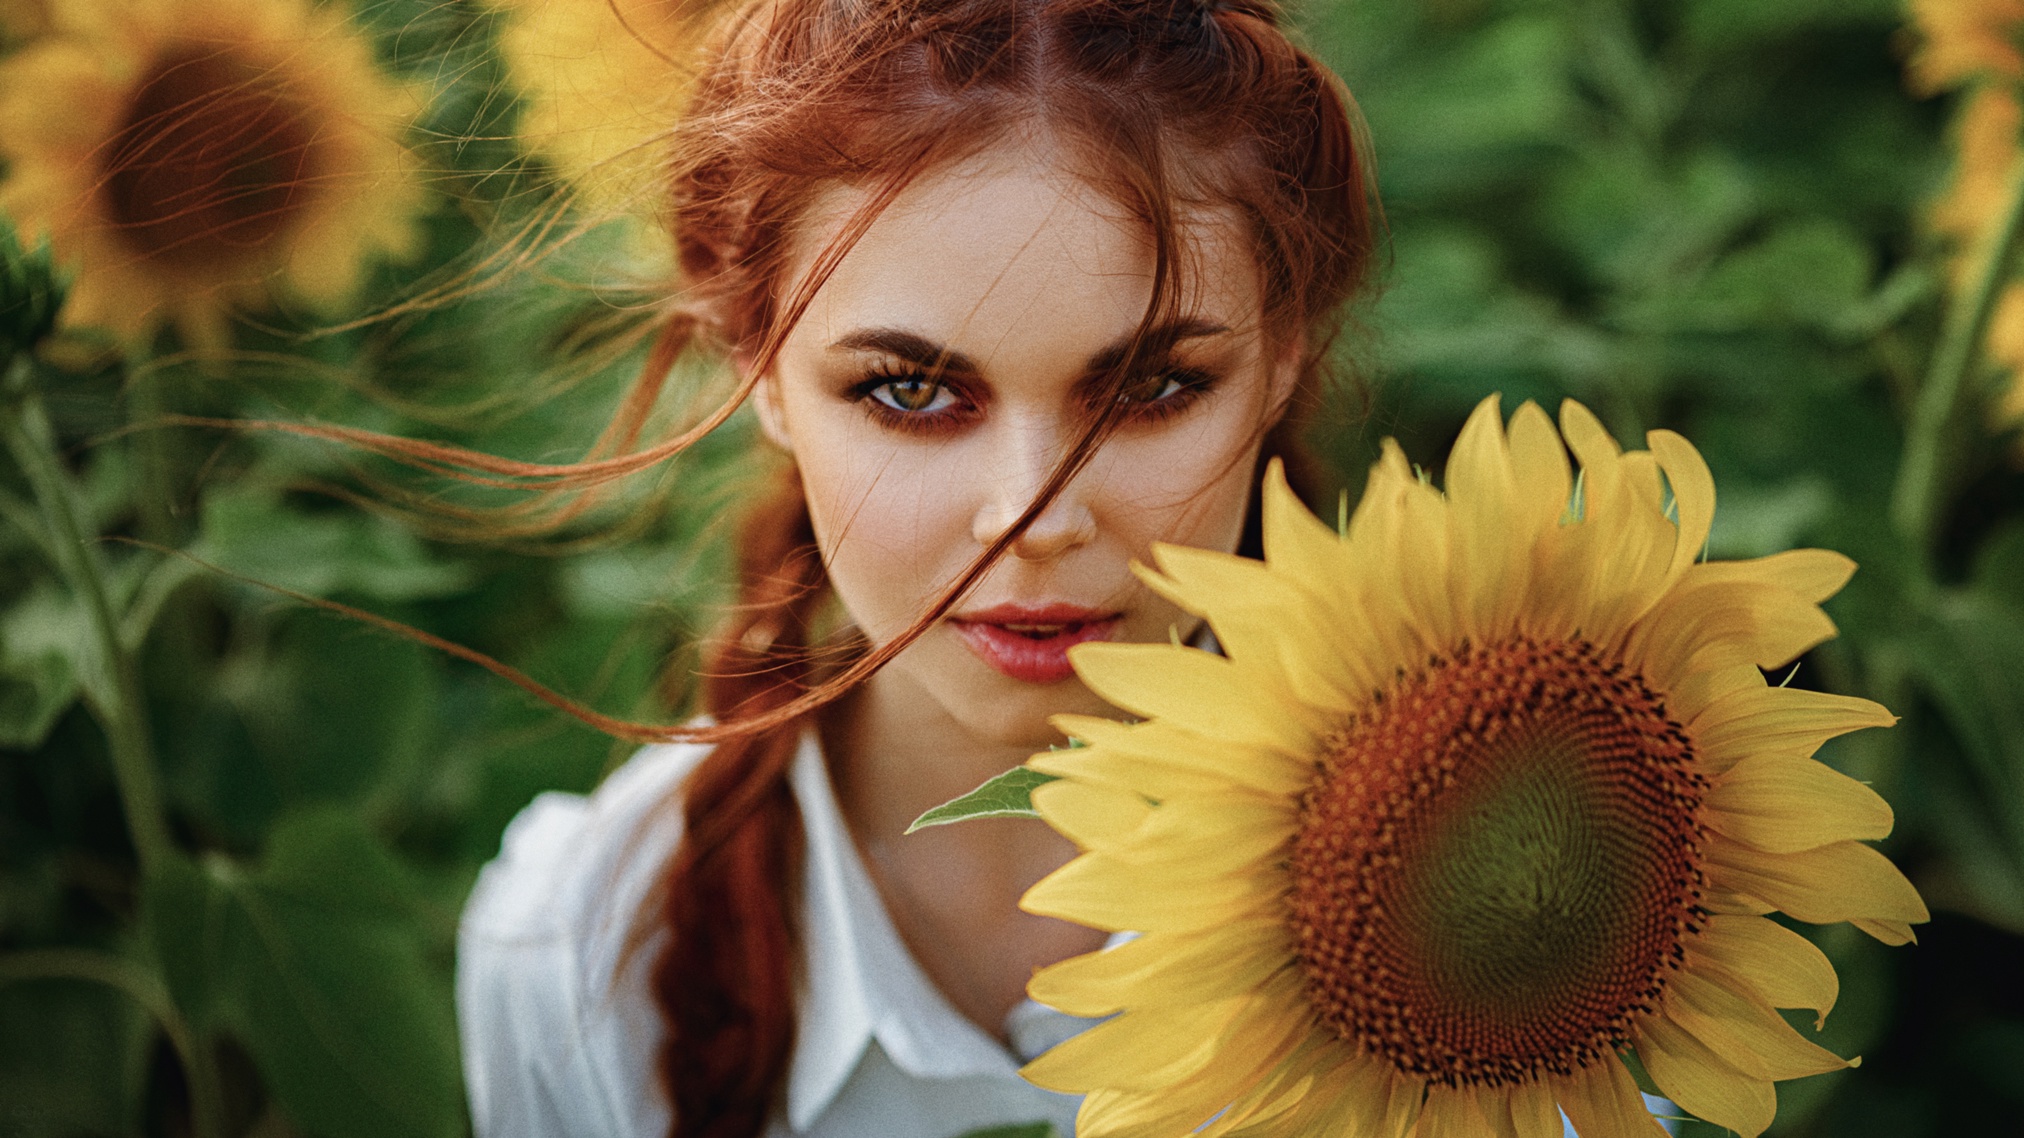 Women Model Face Makeup Flowers Sunflowers Looking At Viewer Women Outdoors 2024x1138